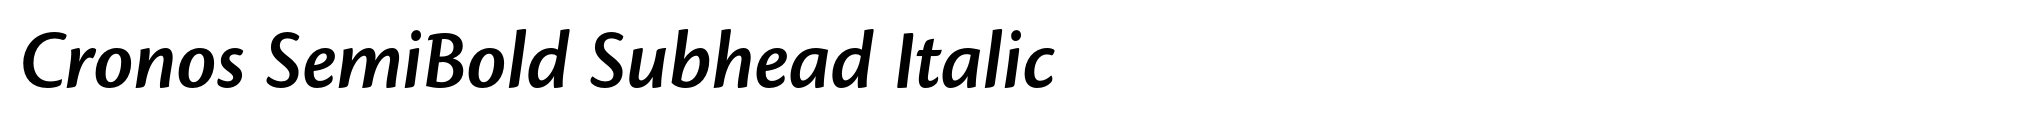 Cronos SemiBold Subhead Italic image